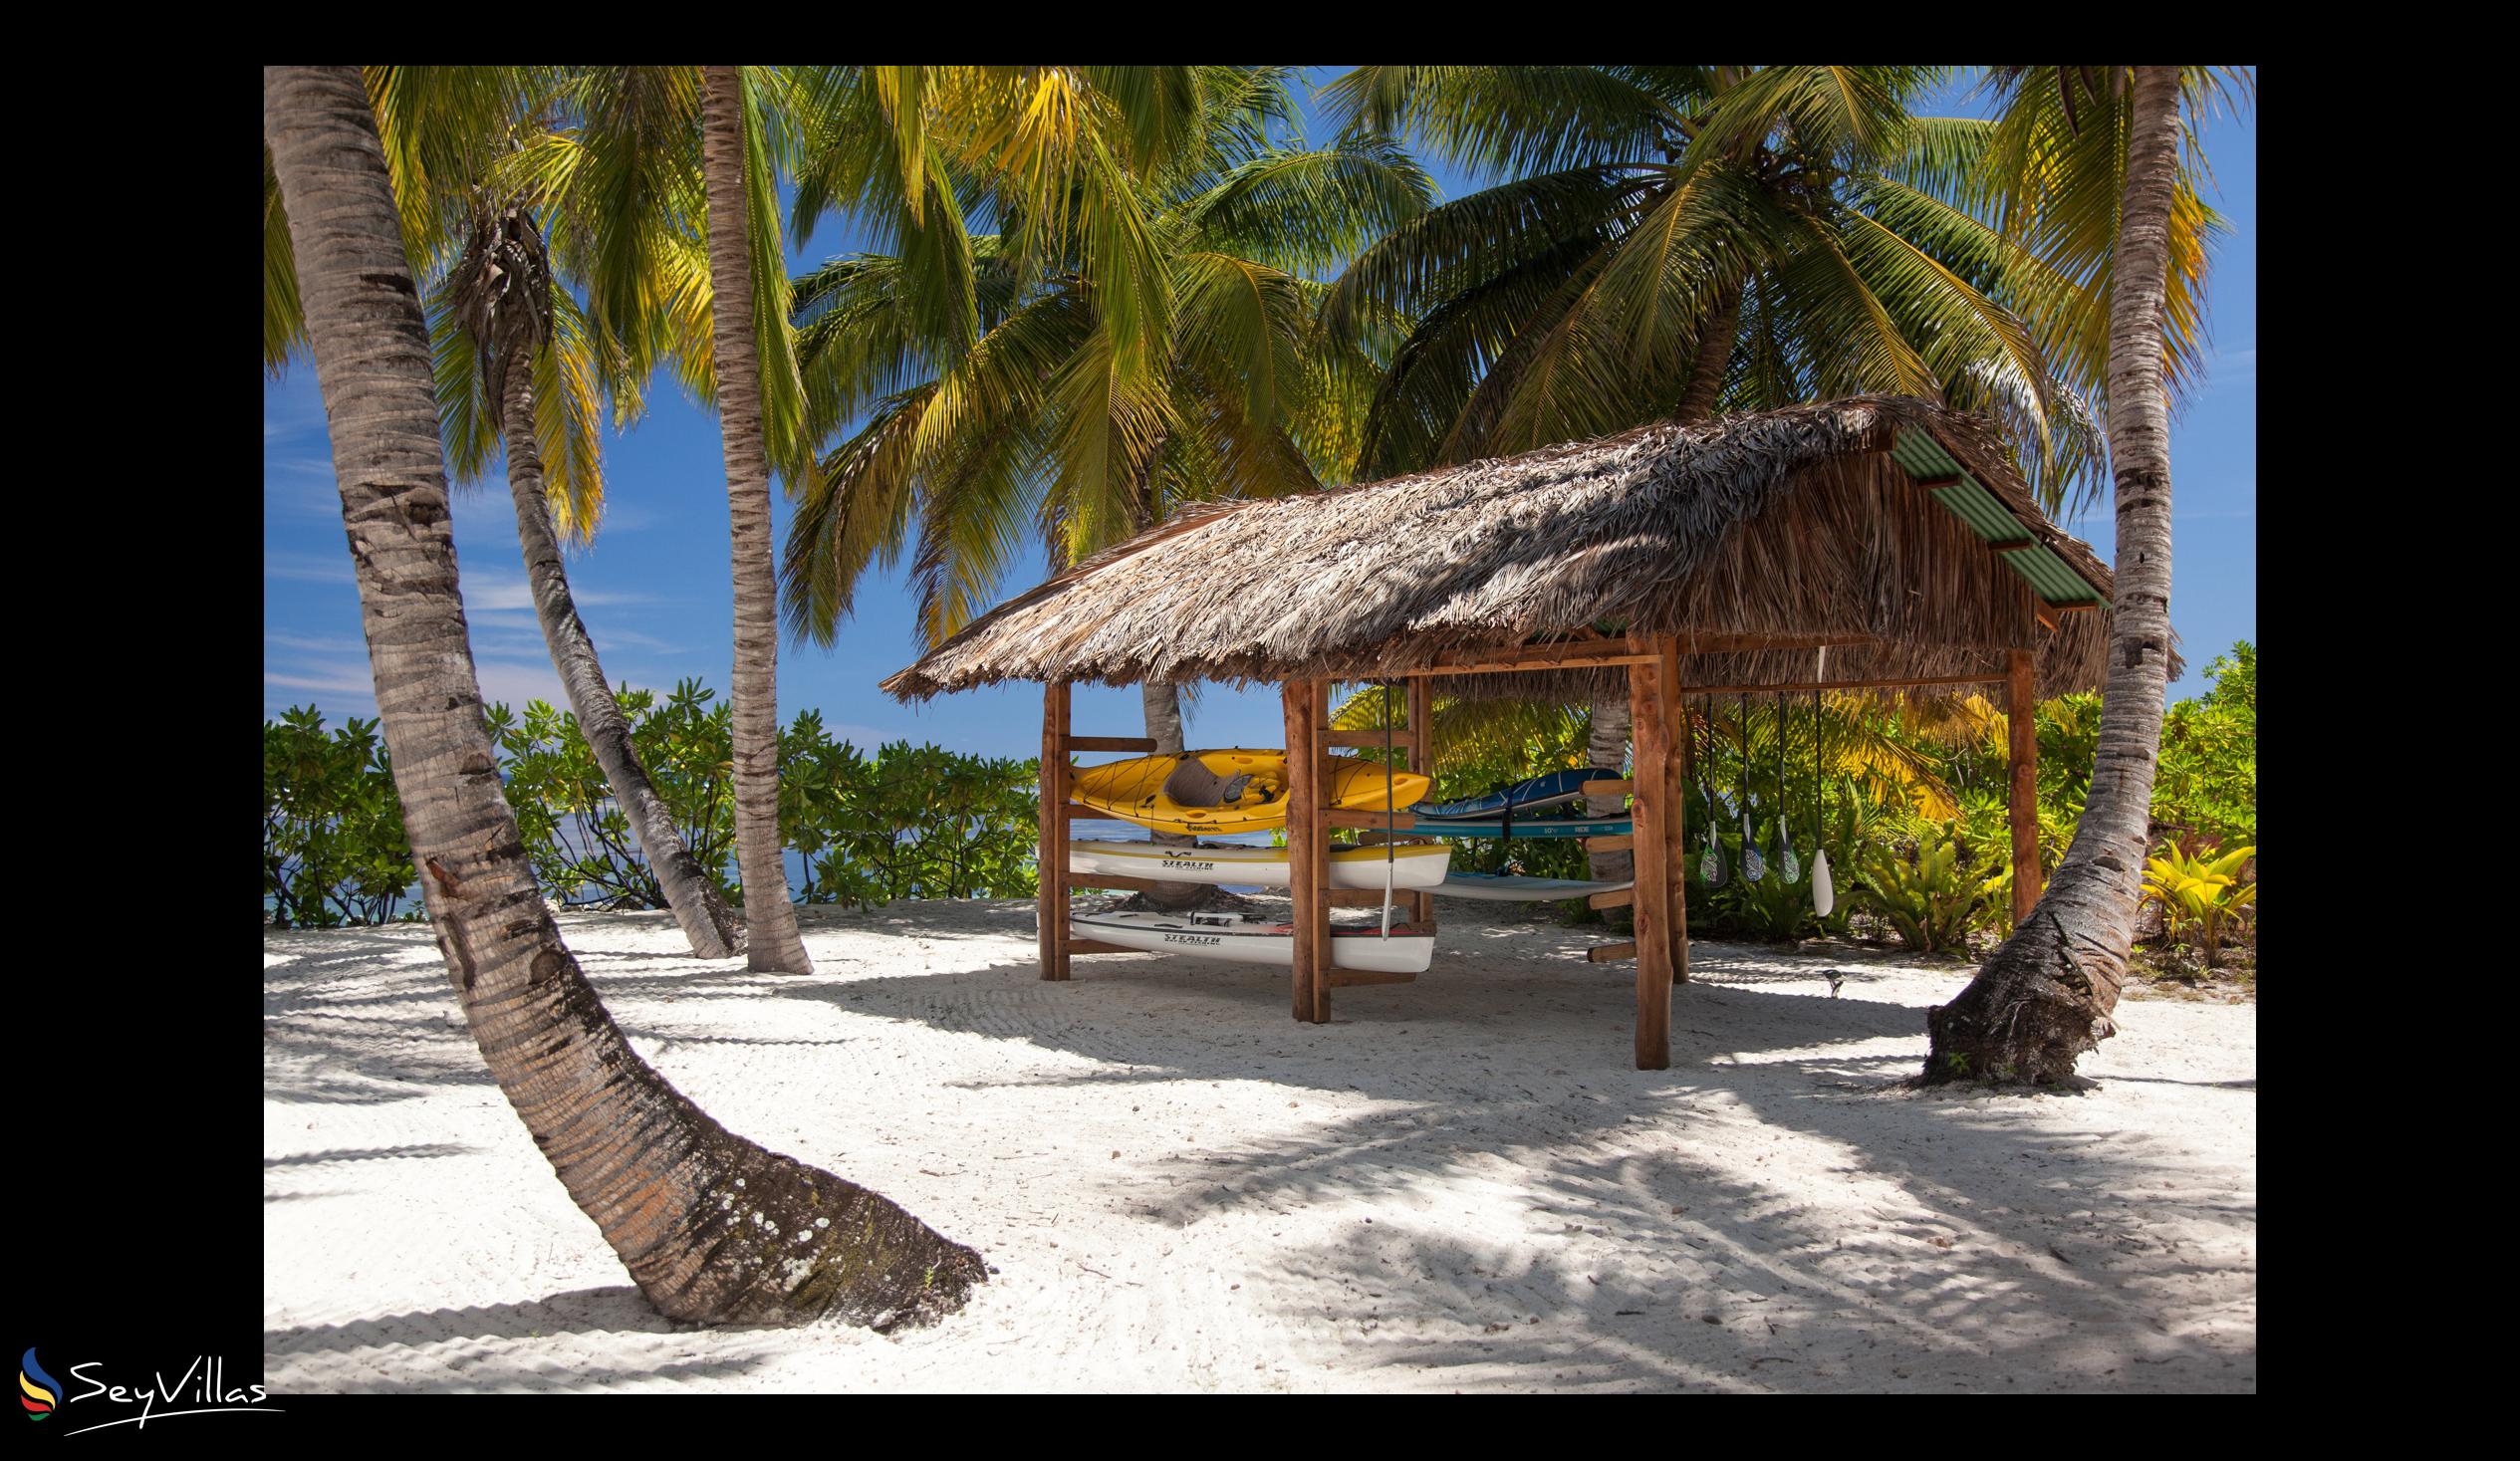 Photo 38: Alphonse Island Lodge - Outdoor area - Alphonse Island (Seychelles)